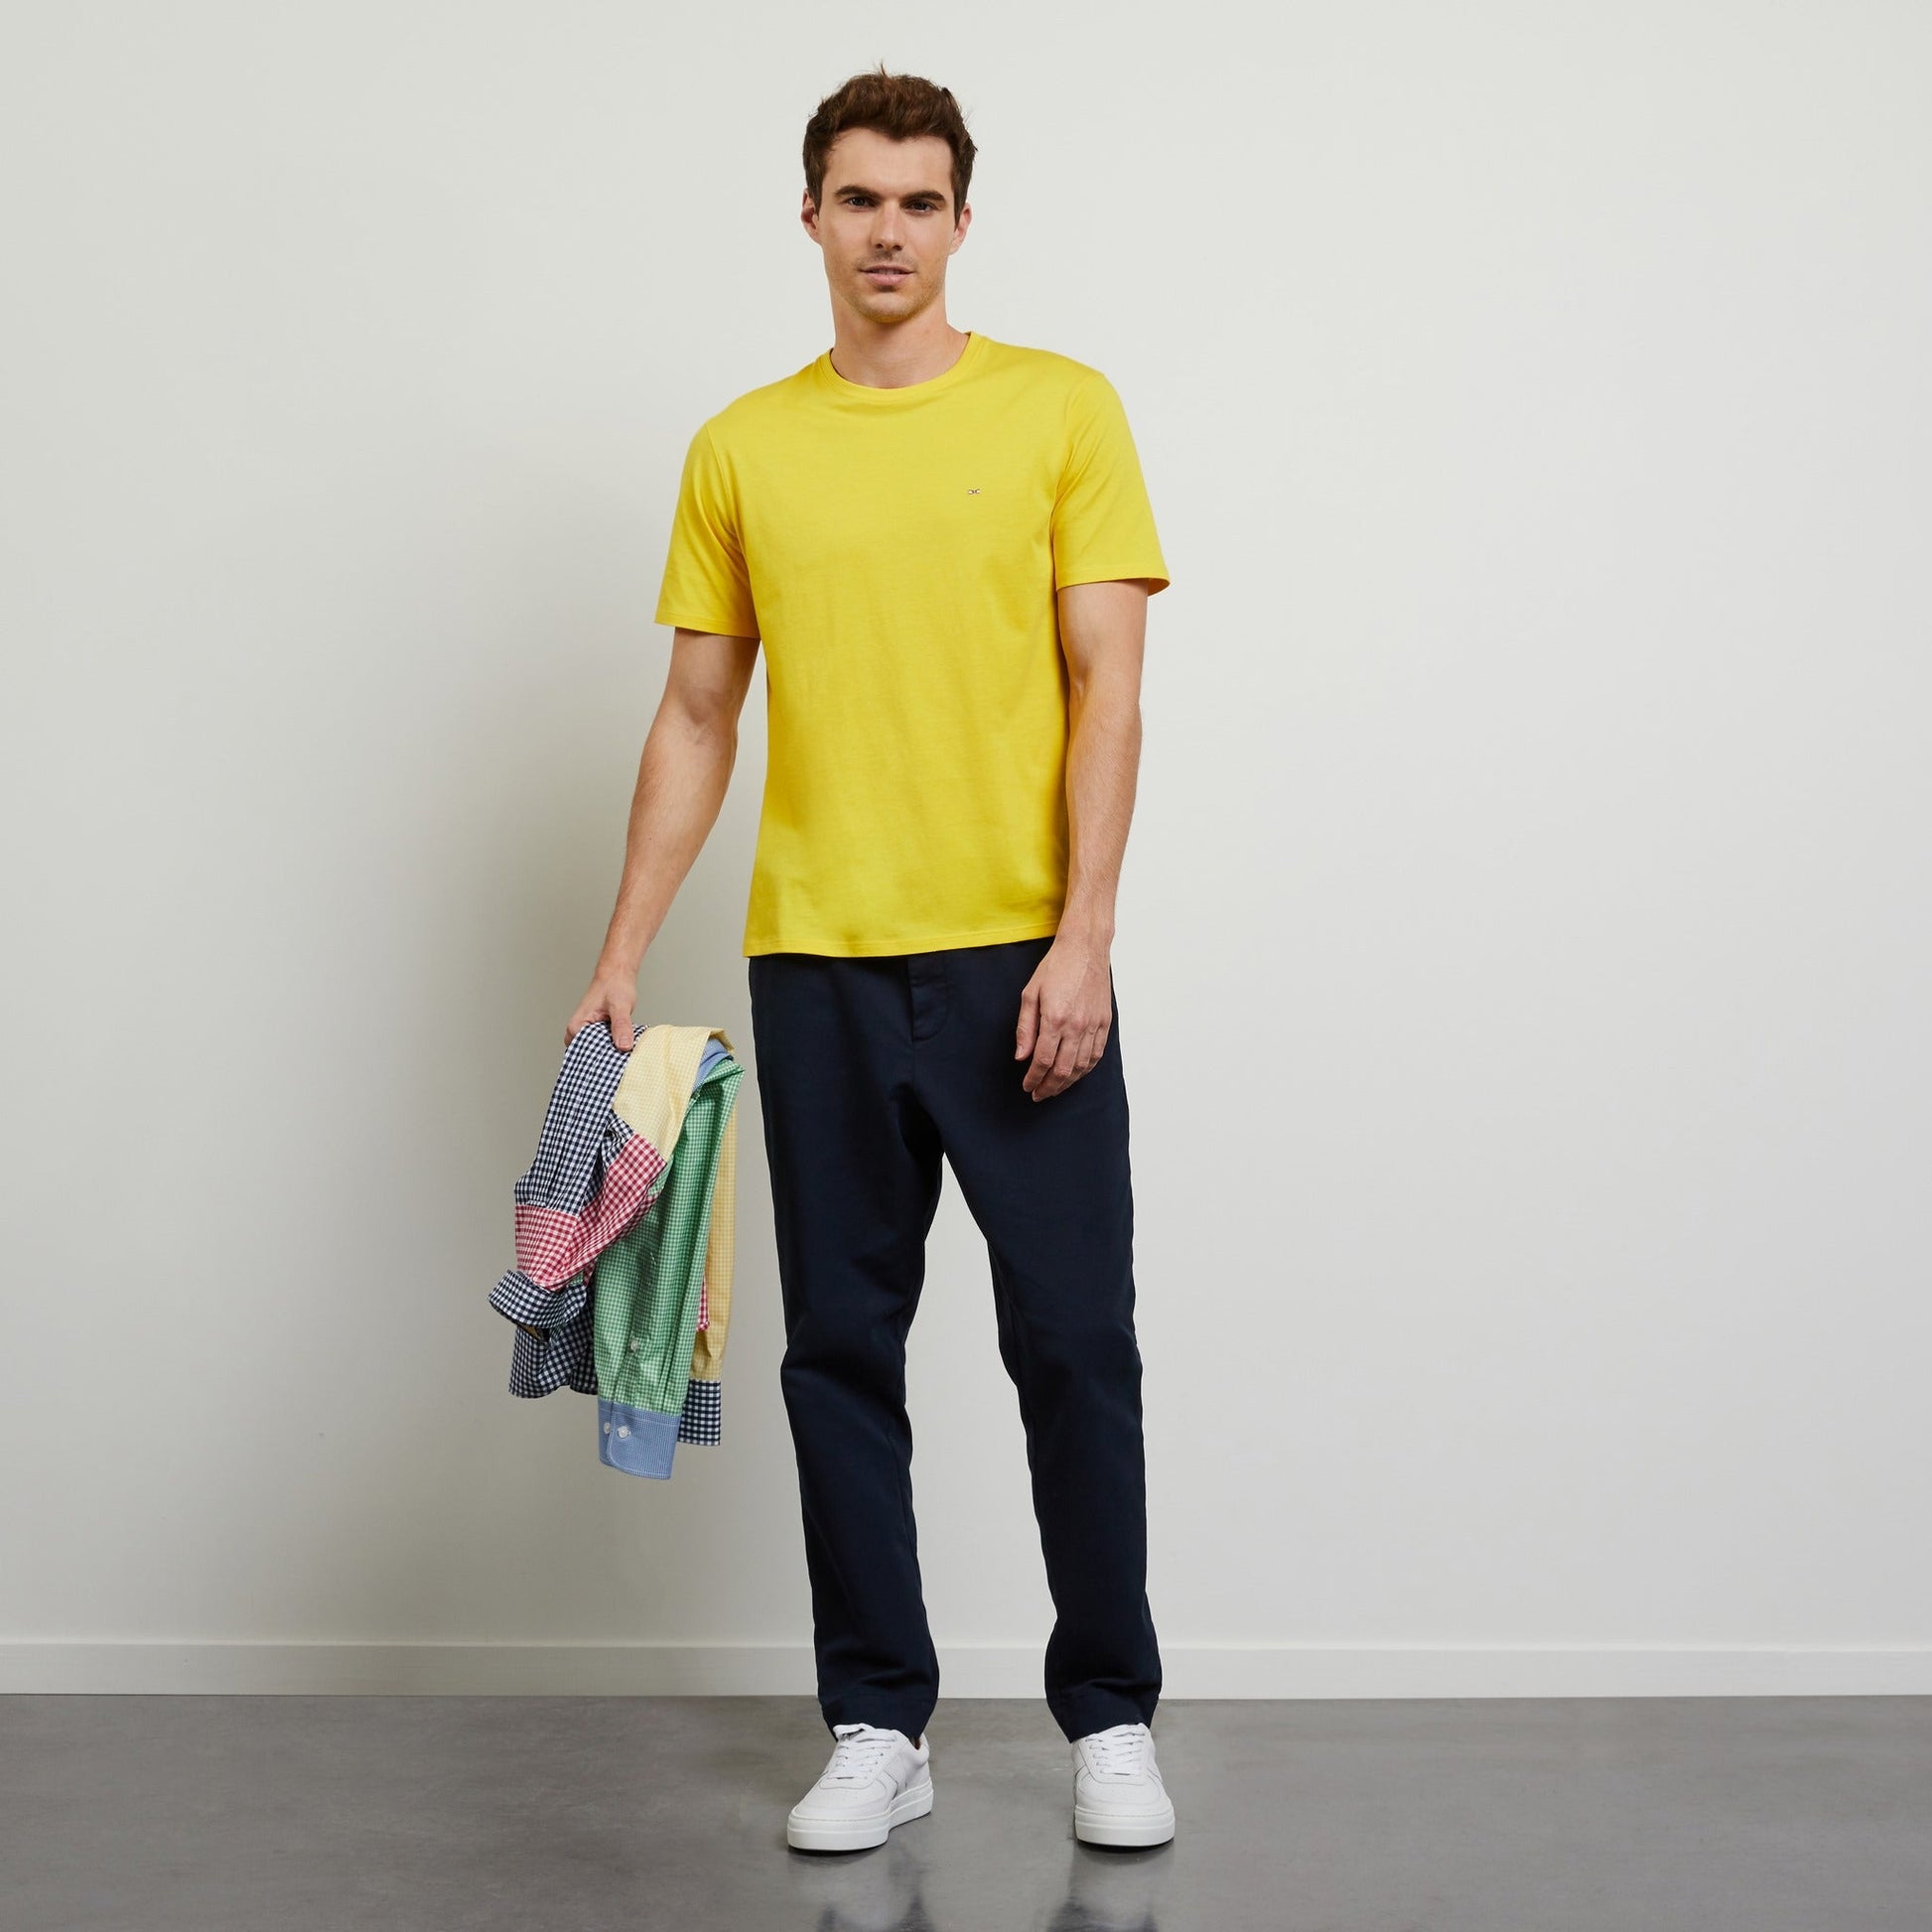 T-shirt manches longues 100% coton - jaune